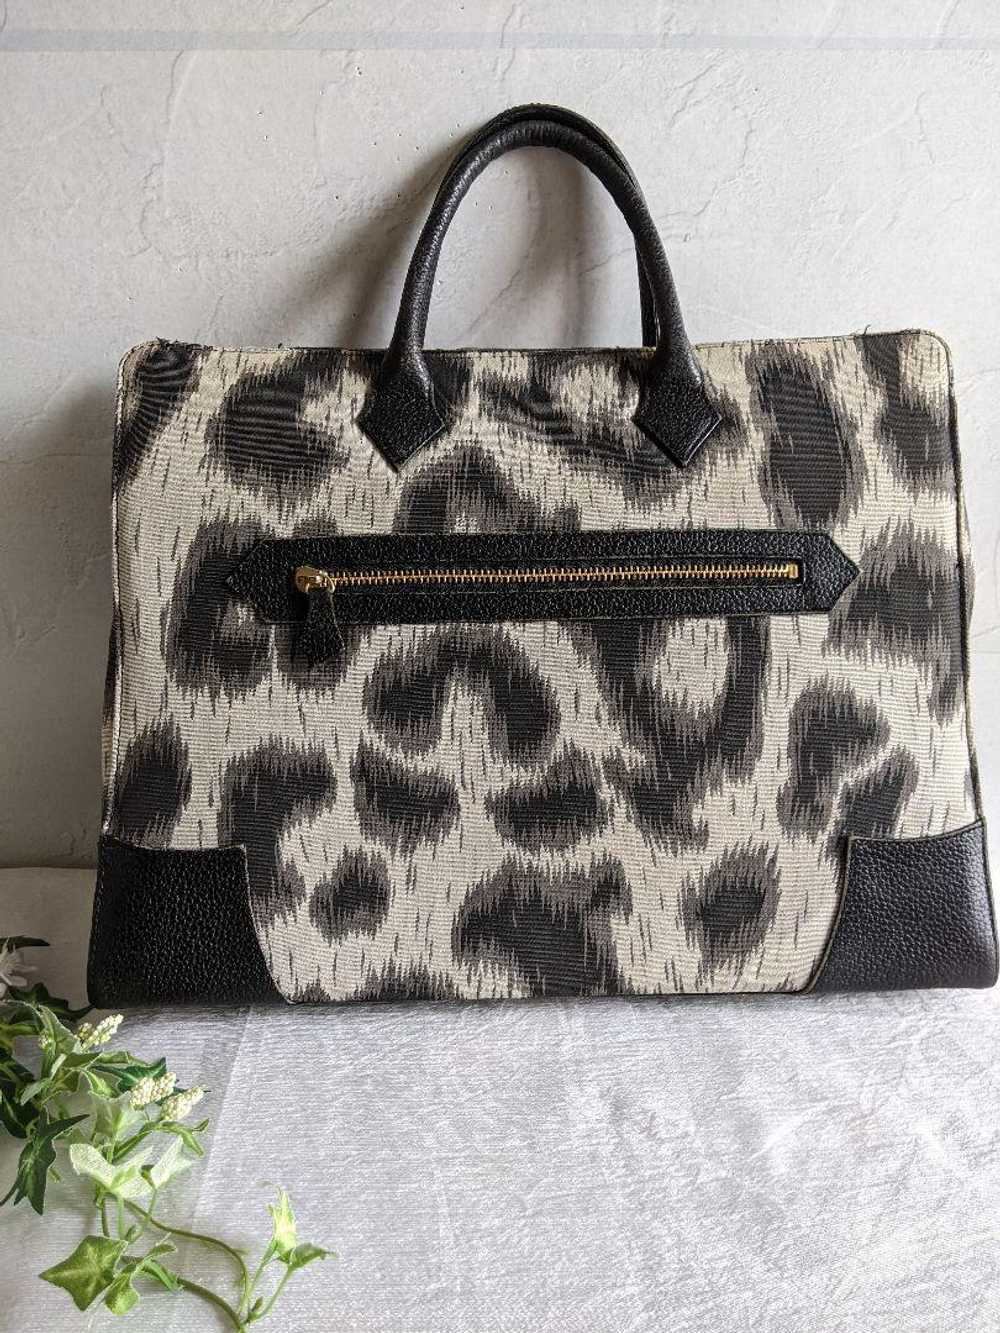 Vivienne Westwood Tote Bag Leopard Print Orb 2Way - image 3